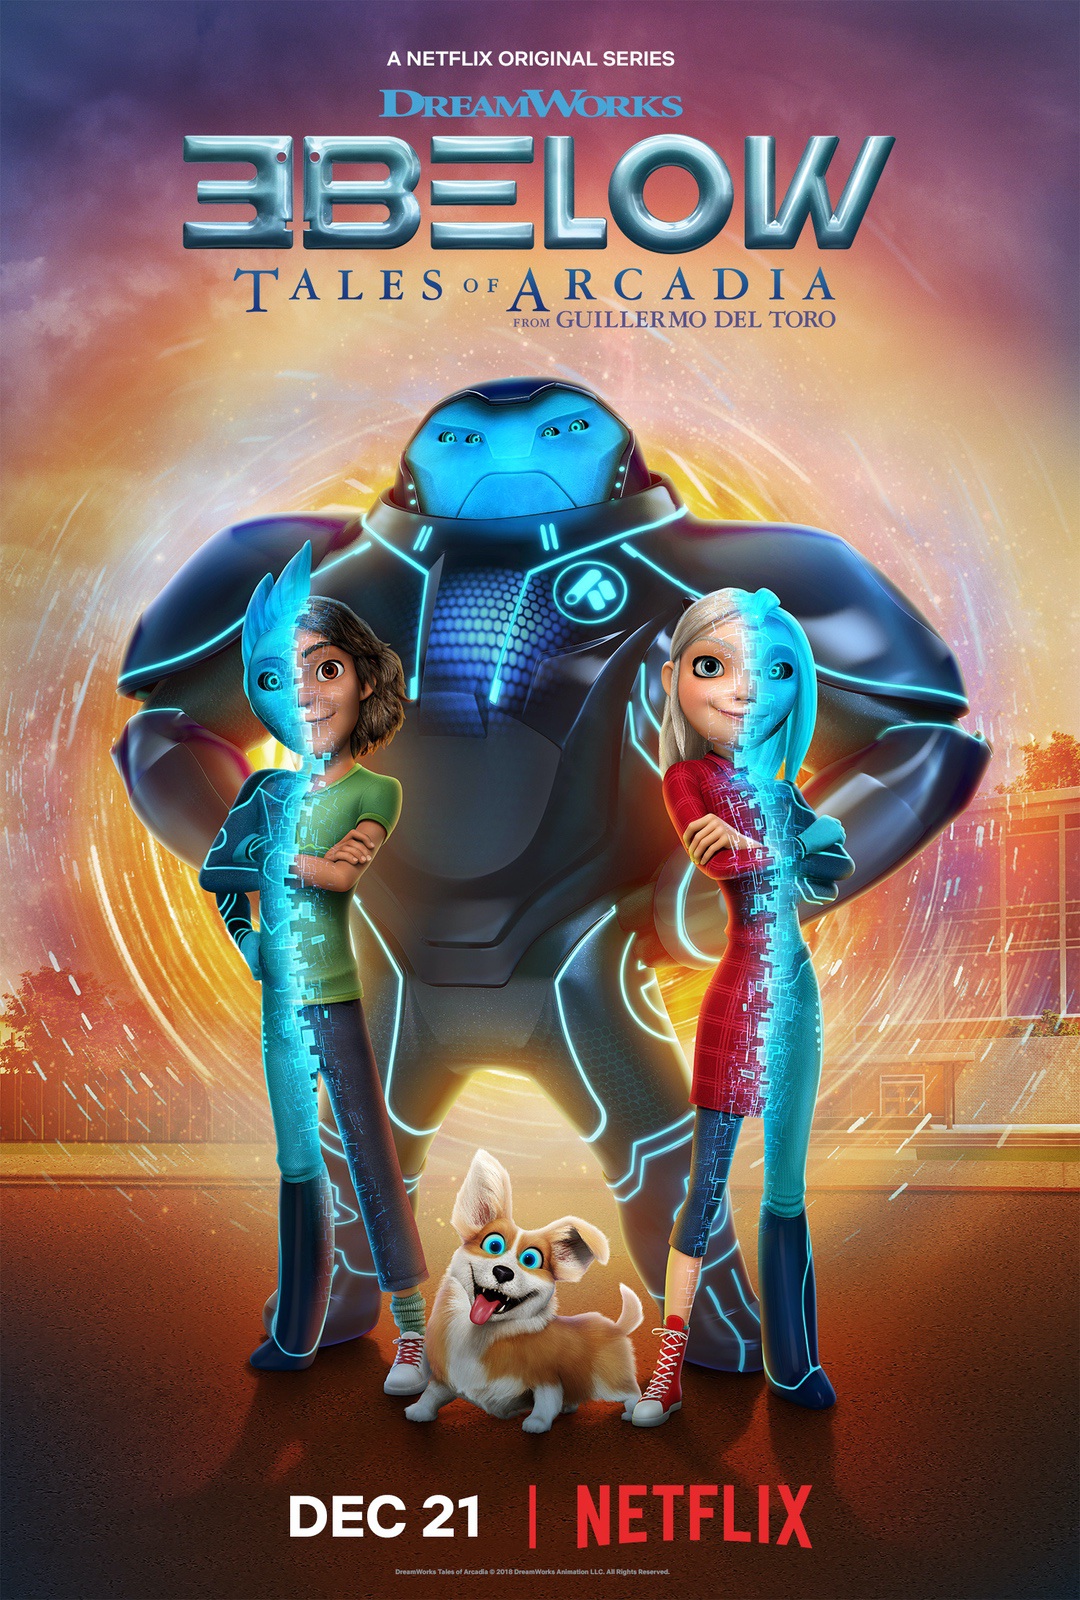 3Below: Tales of Arcadia Season 1 #DWA #3Below #Netflix #ad